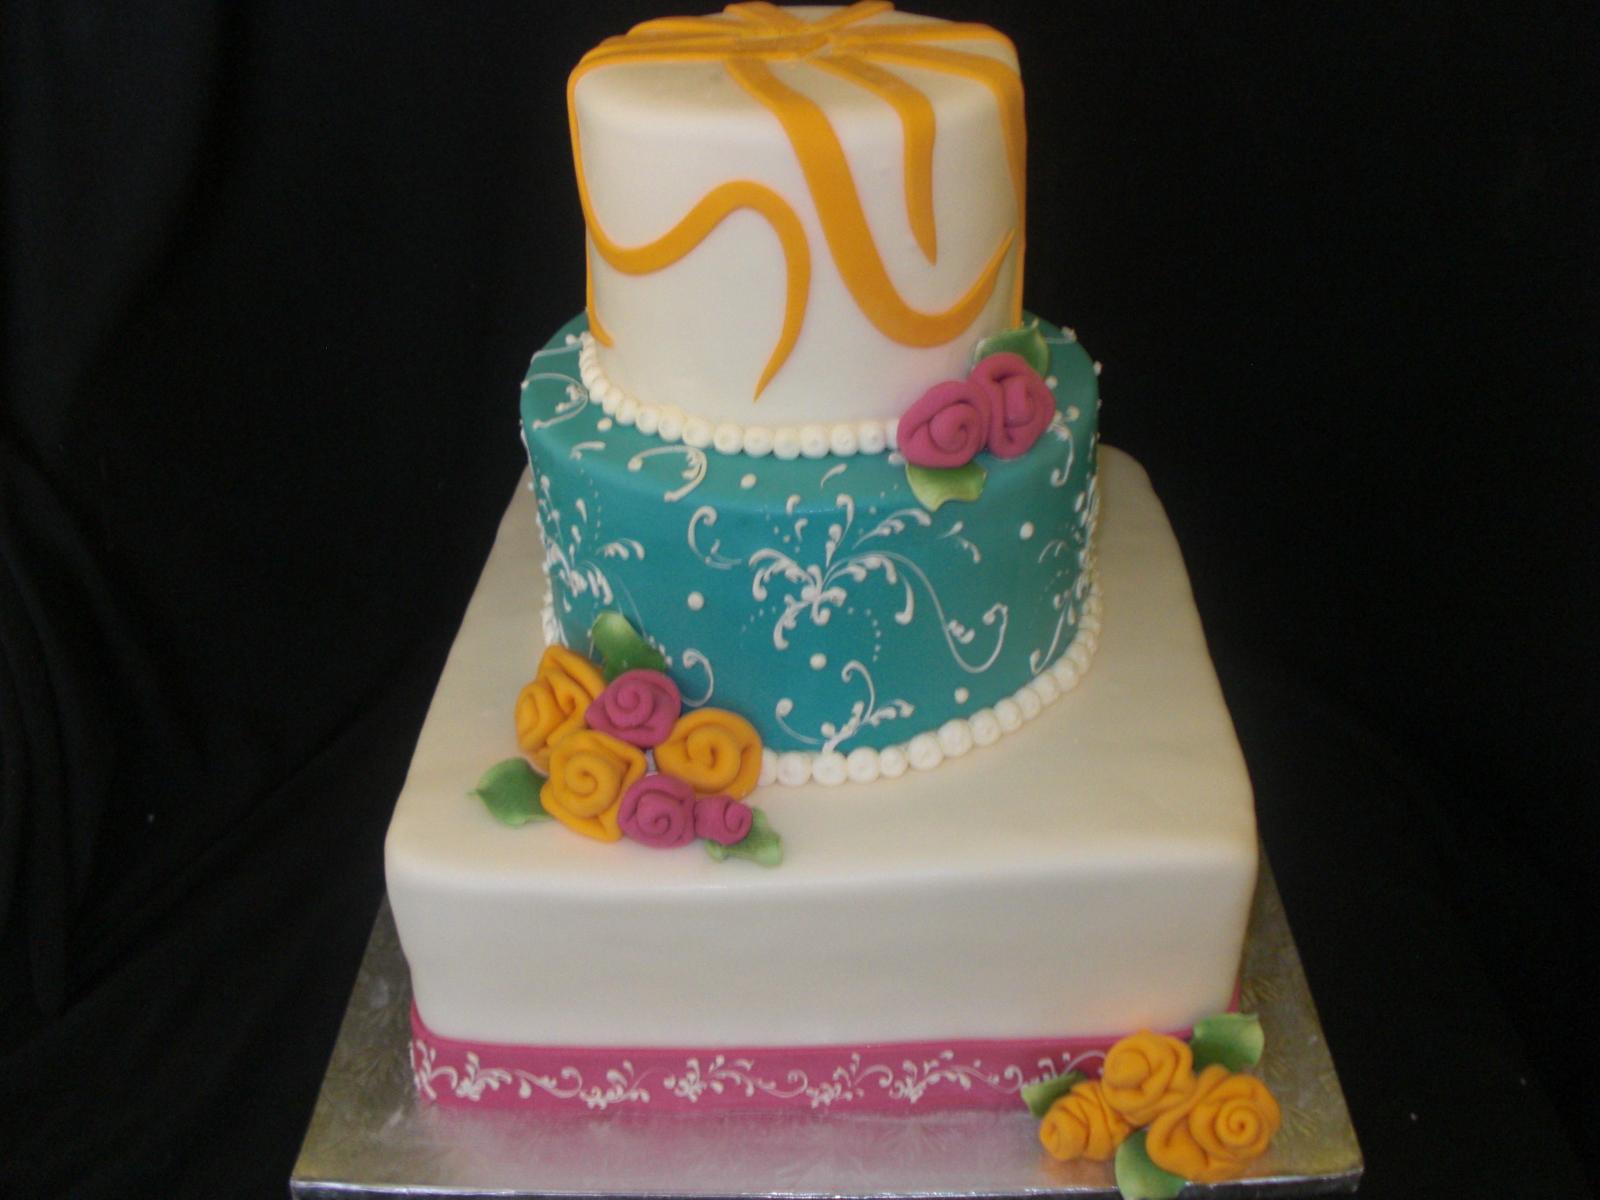 las-vegas-wedding-cake-with-